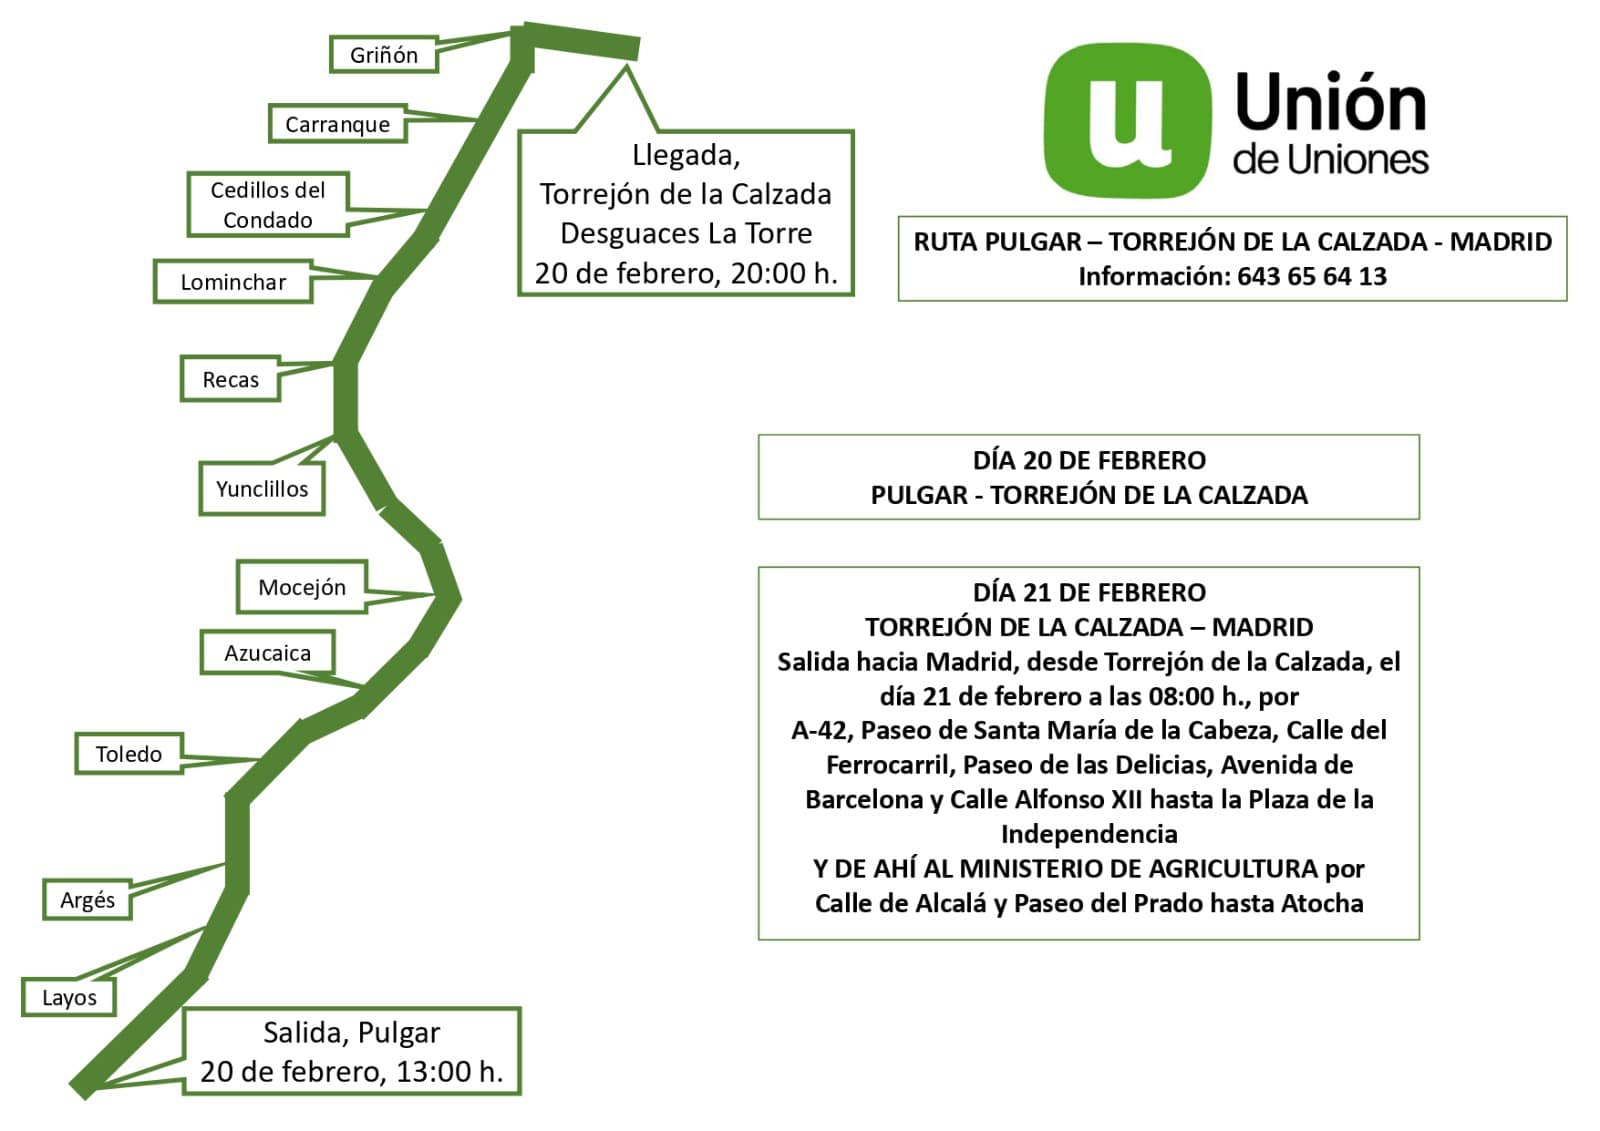 Gráficos de los recorridos, que afectan a Illescas y alrededores en la tractorada días 20 y 21